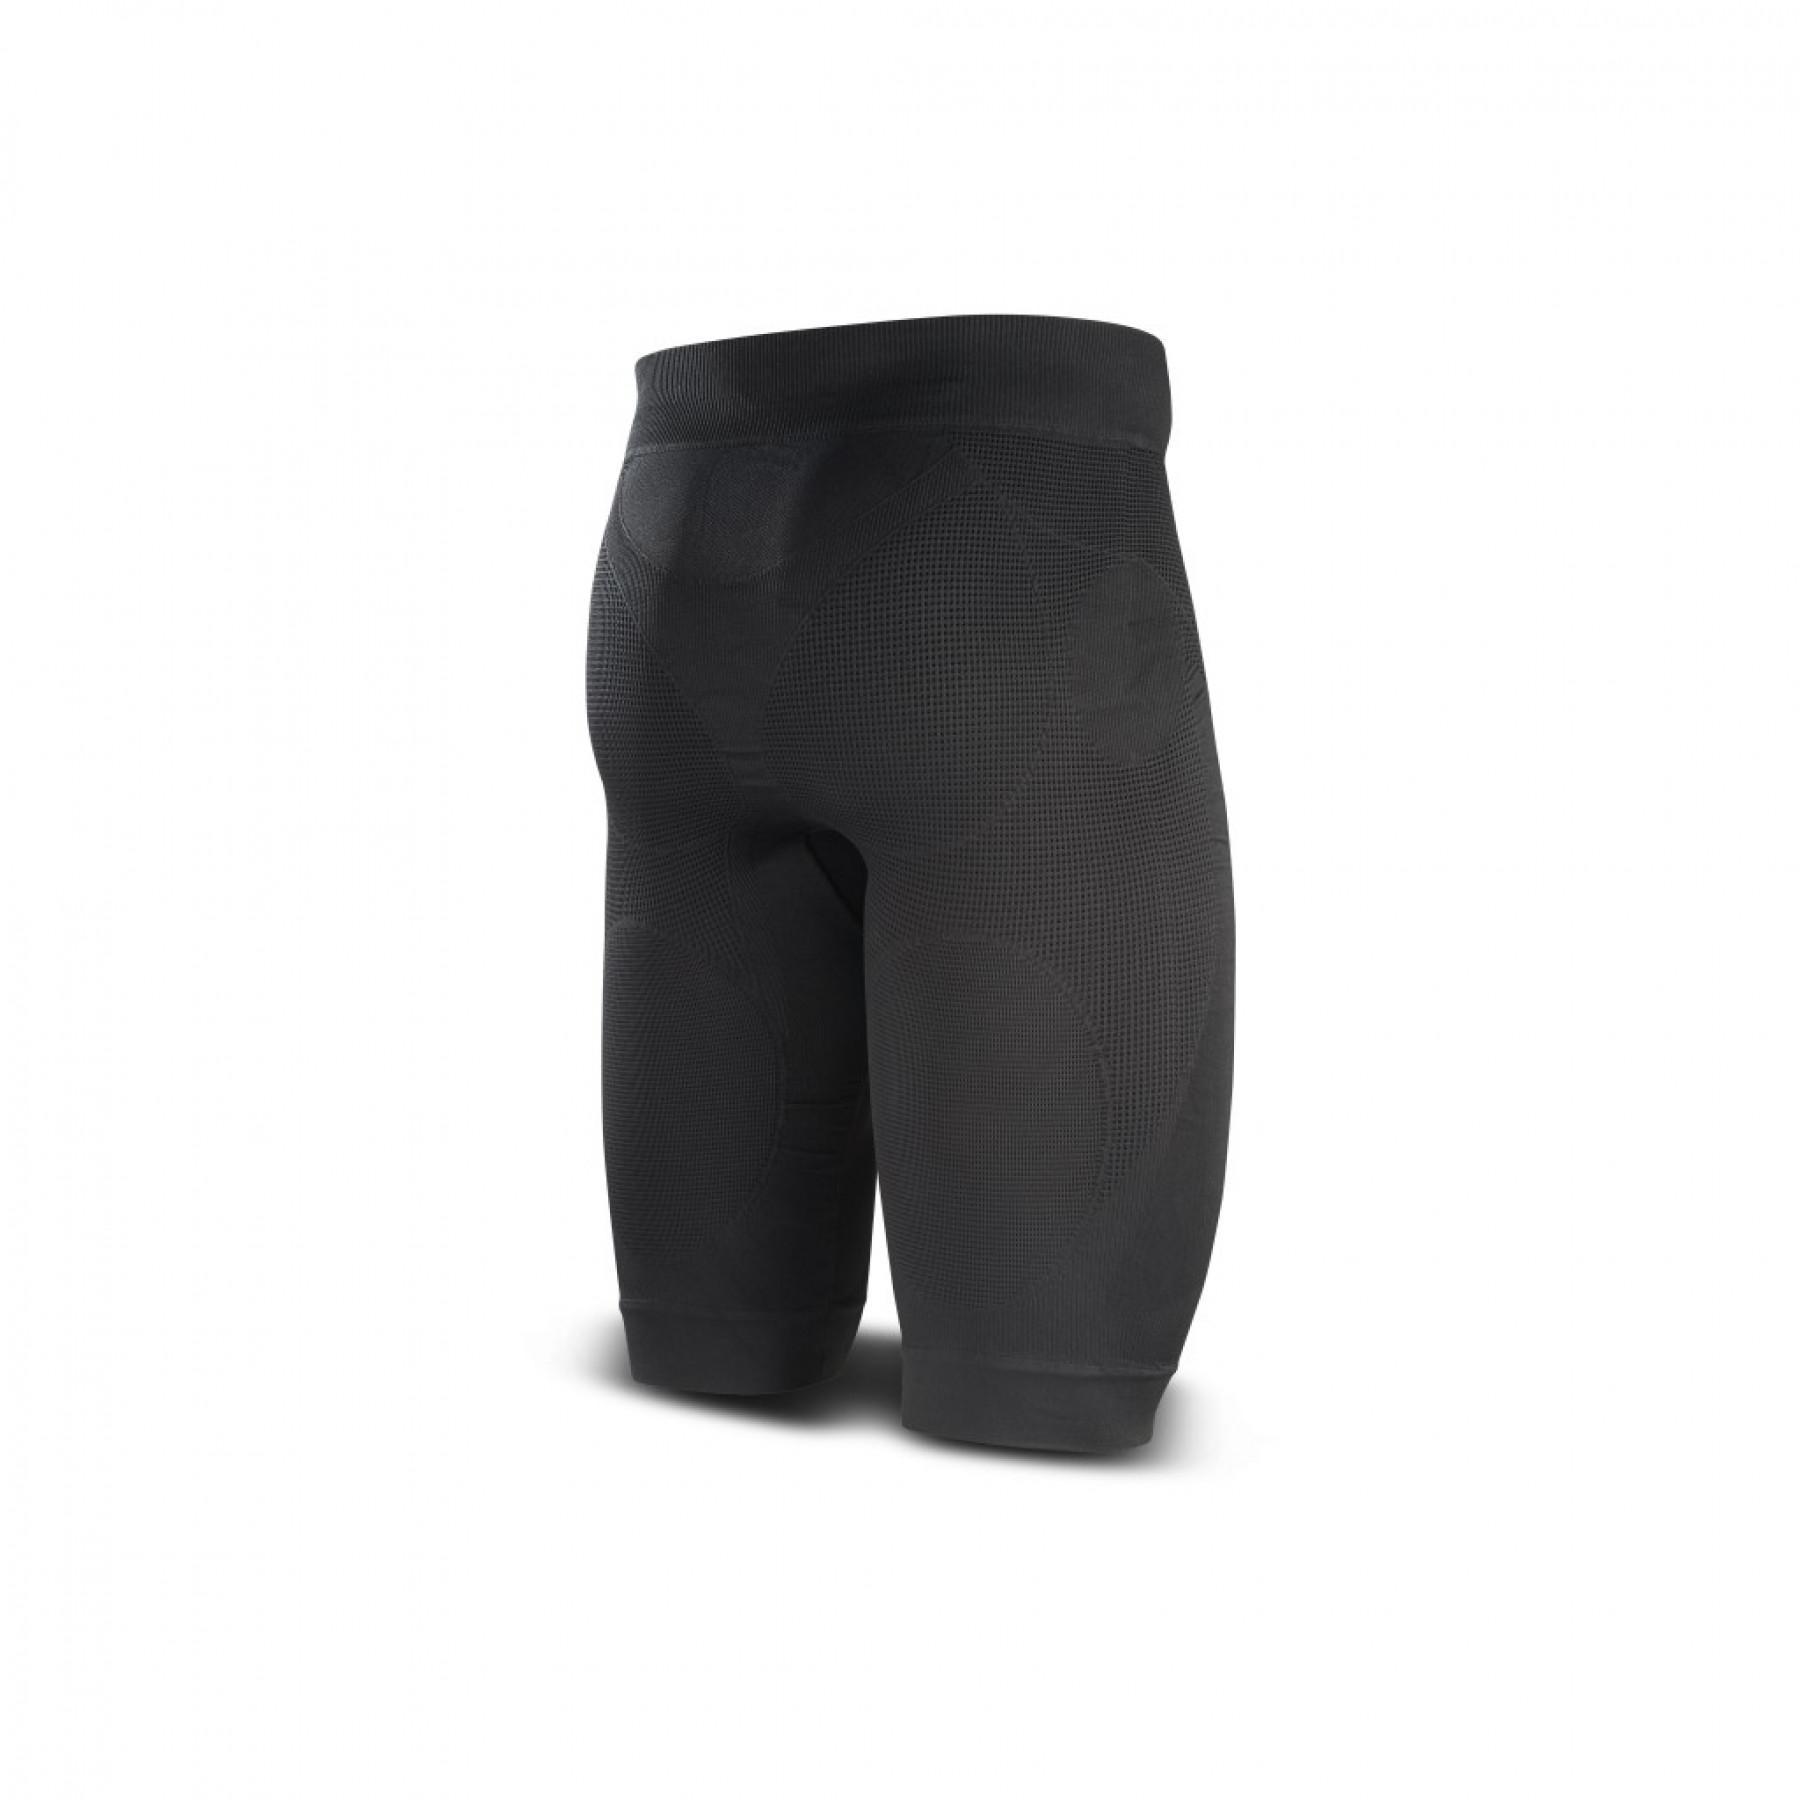 Pantalones cortos de compresión BV Sport CSX Noir